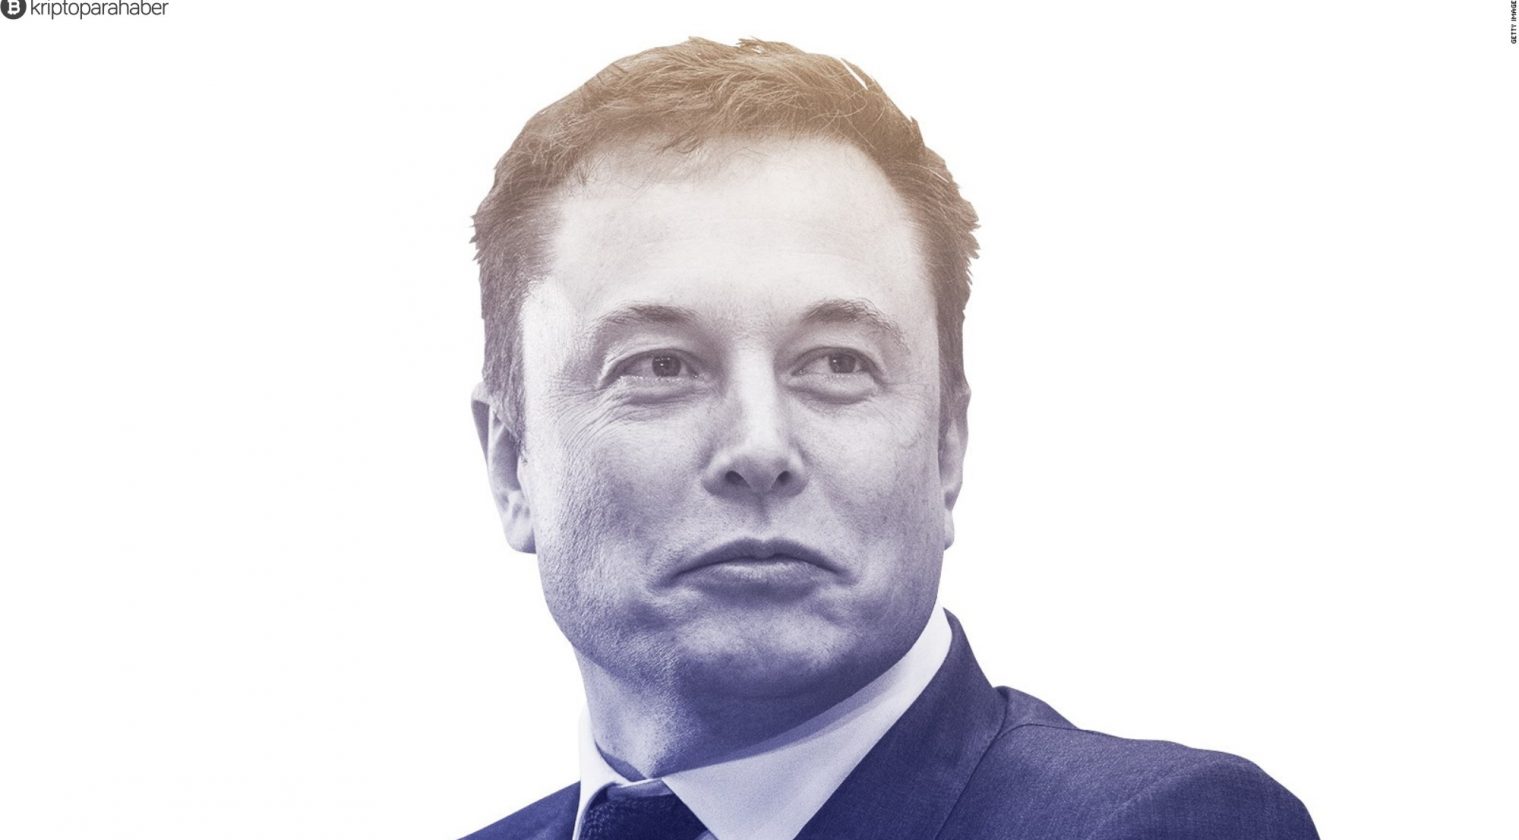 Şok iddia: Elon Musk'ın şirketi SpaceX, Bitcoin almaya hazırlanıyor olabilir! Kritik bilgi geldi